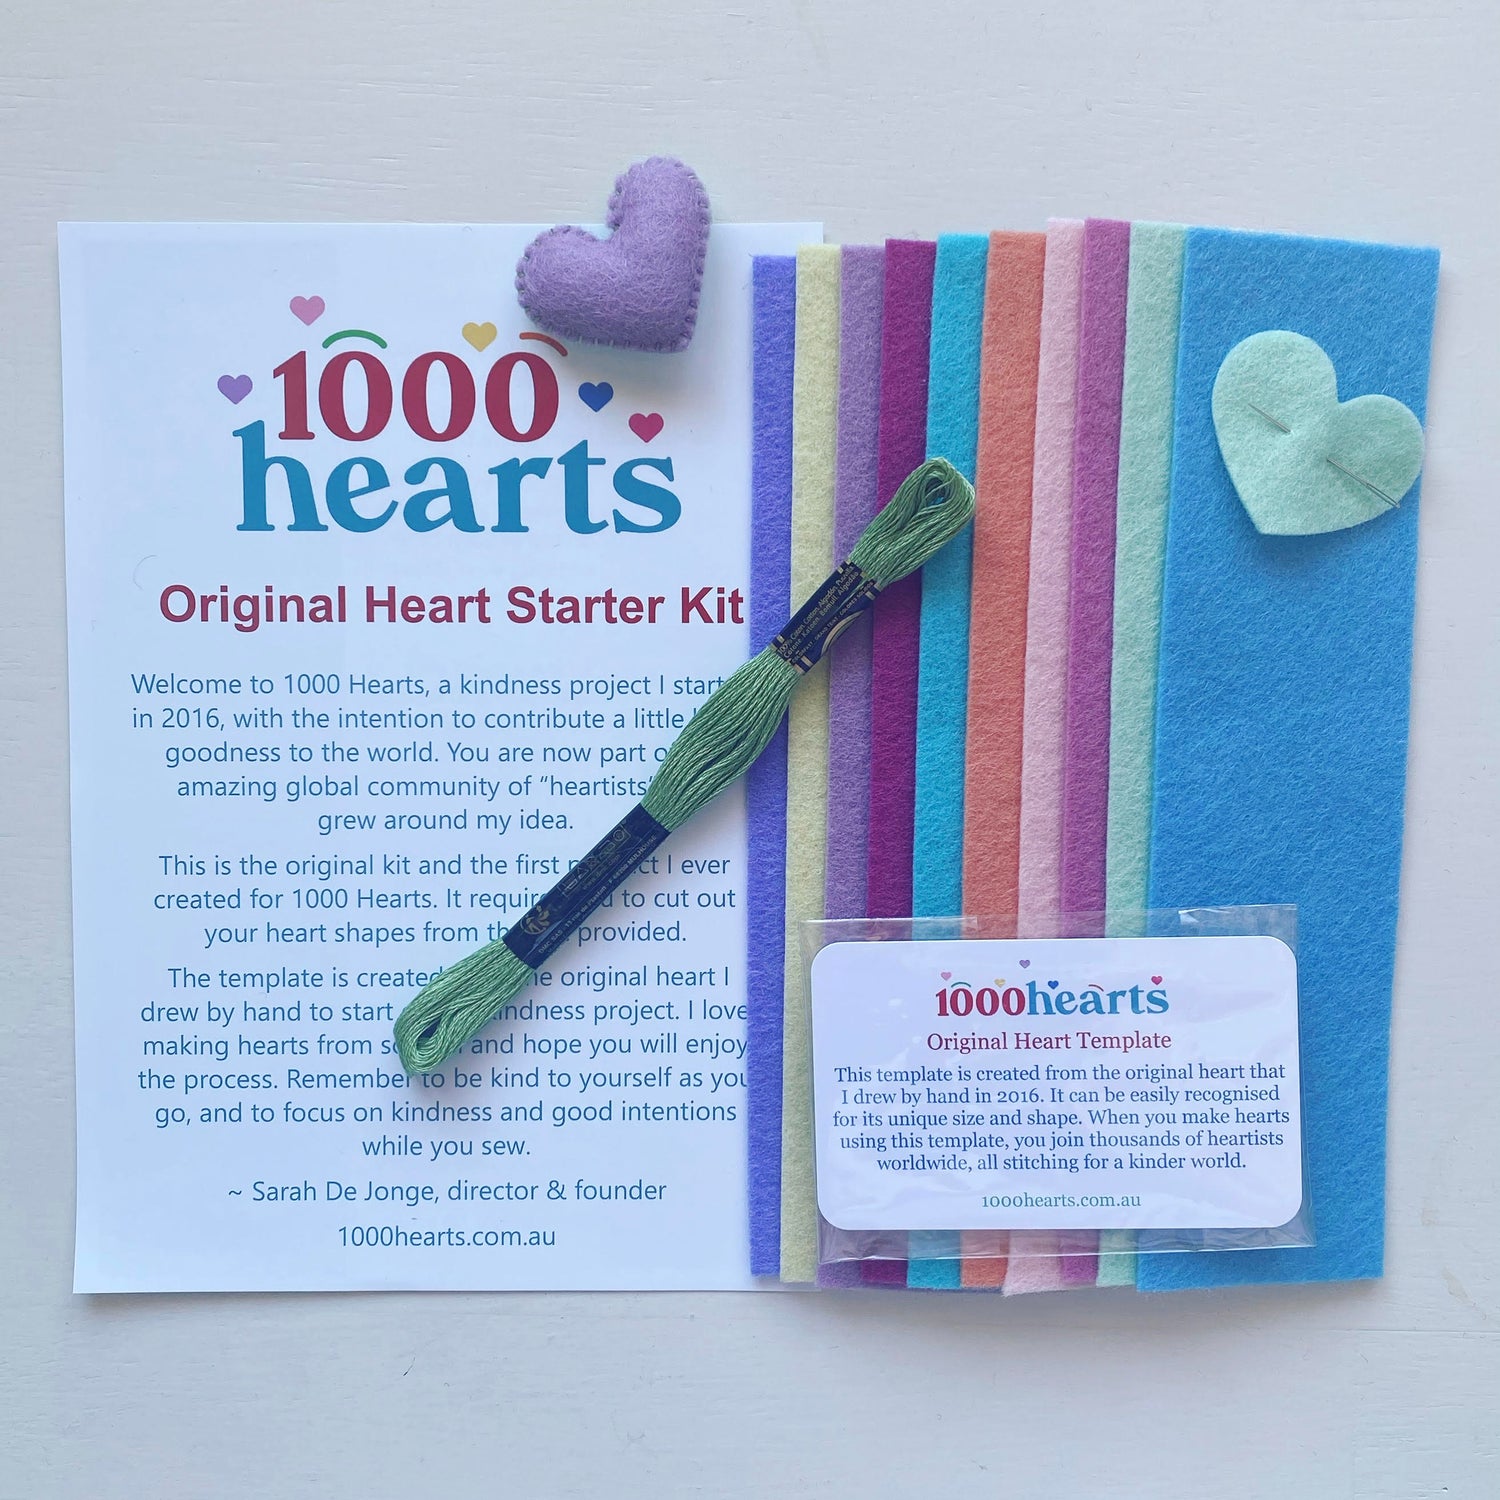 Original Heart Starter Kit with felt